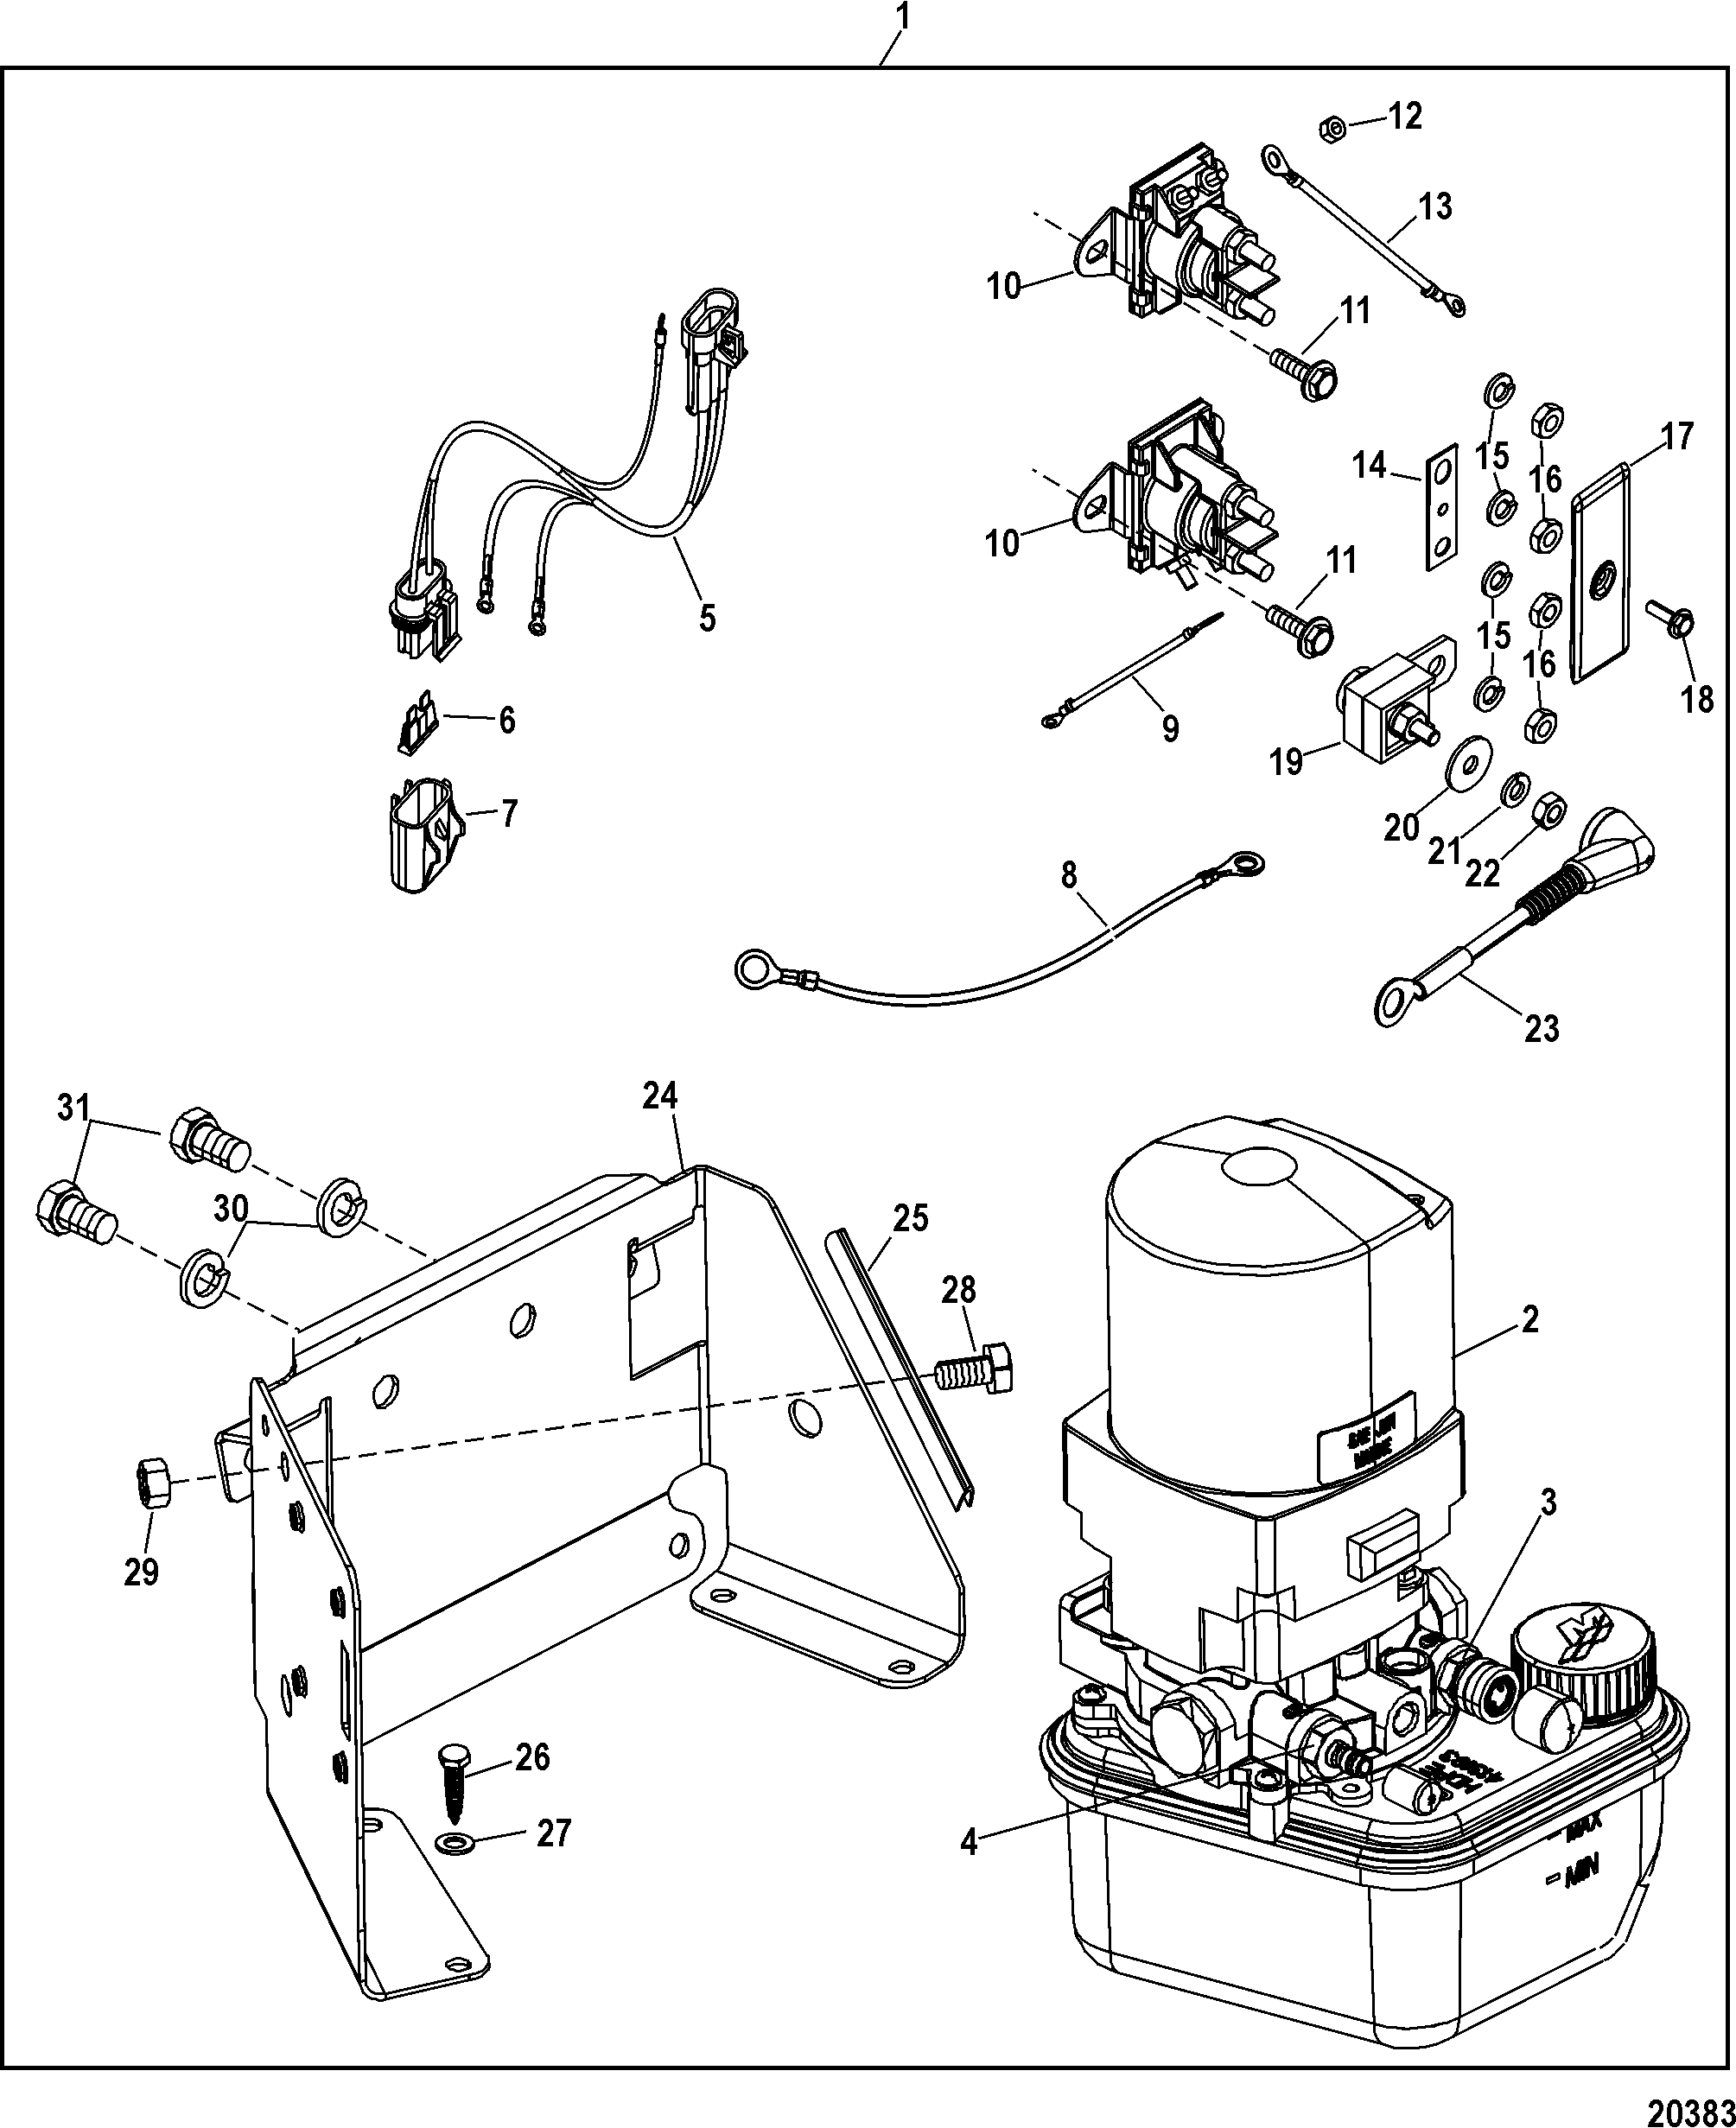 Mercruiser 140 Parts Diagram